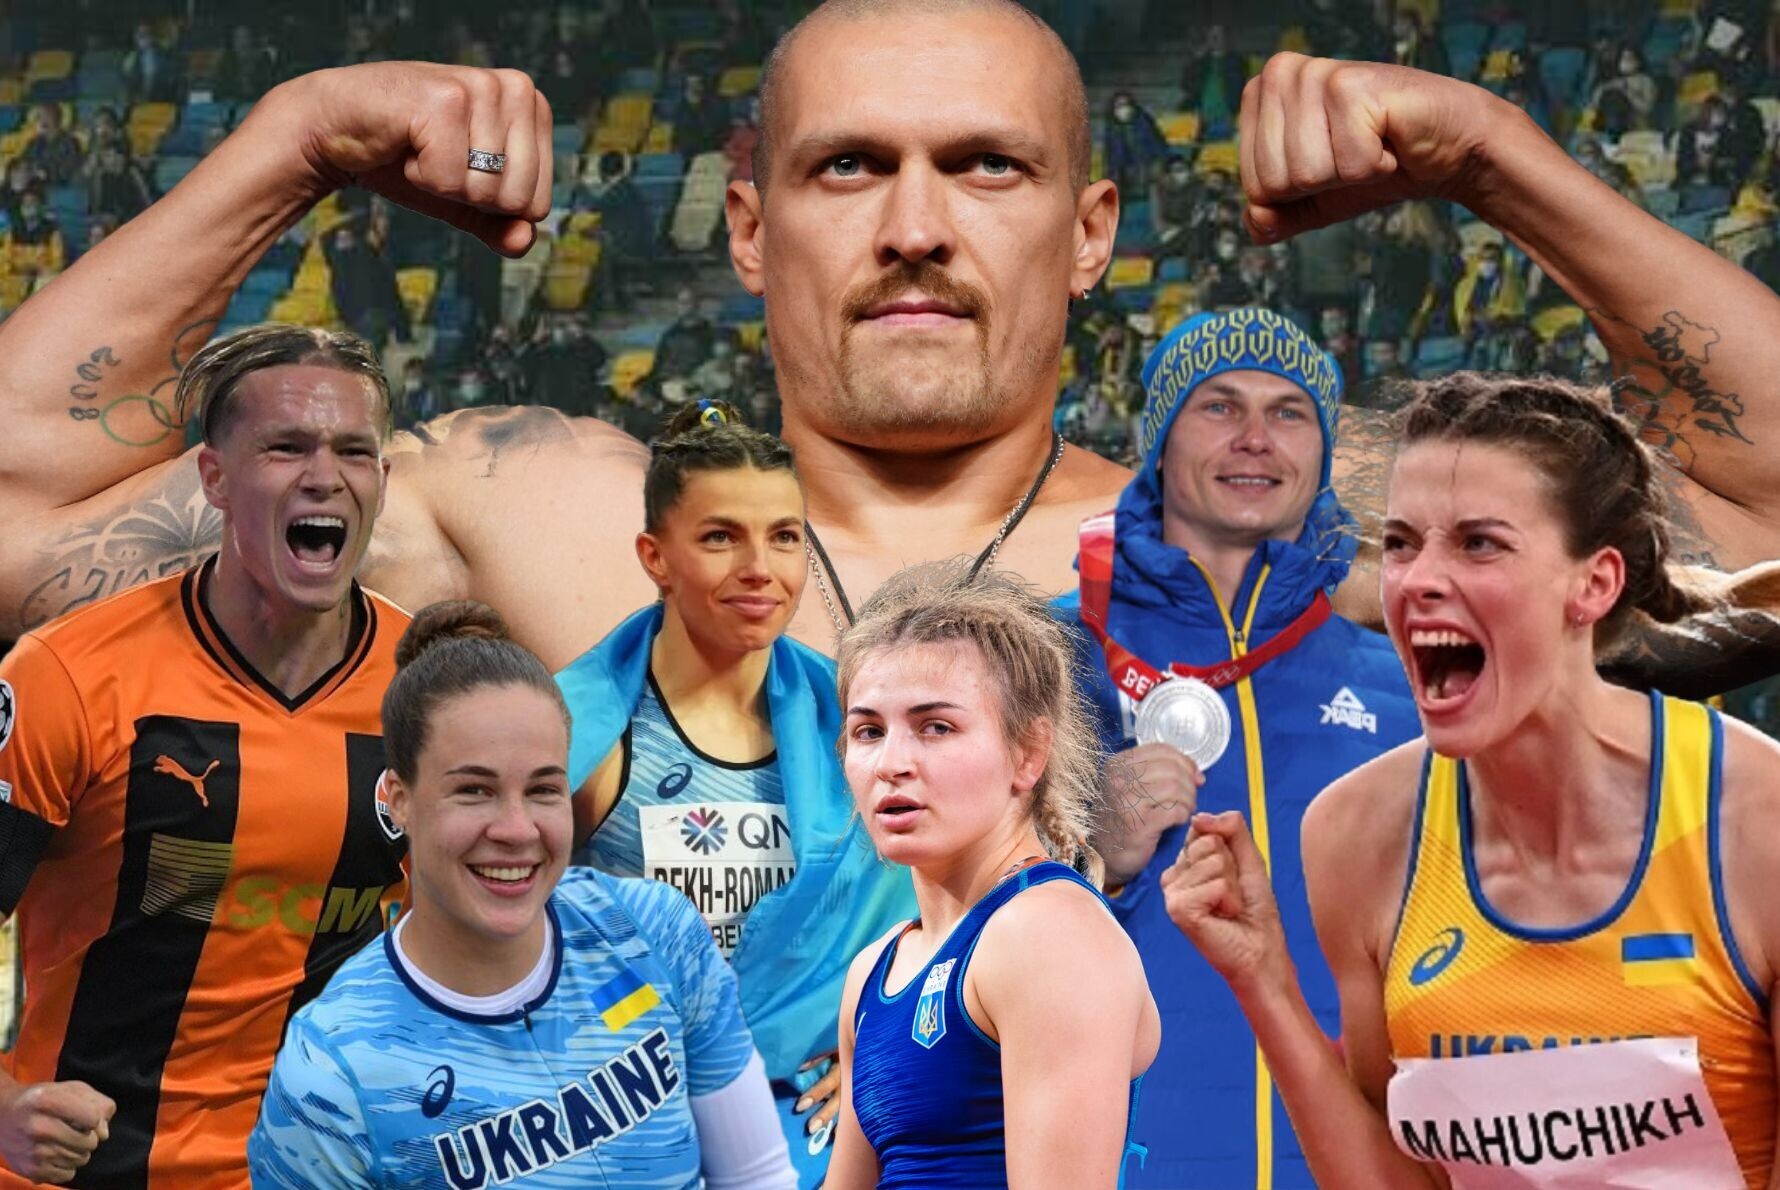 Україна має брати участь в спортивних змаганнях з росіянами – Діанов